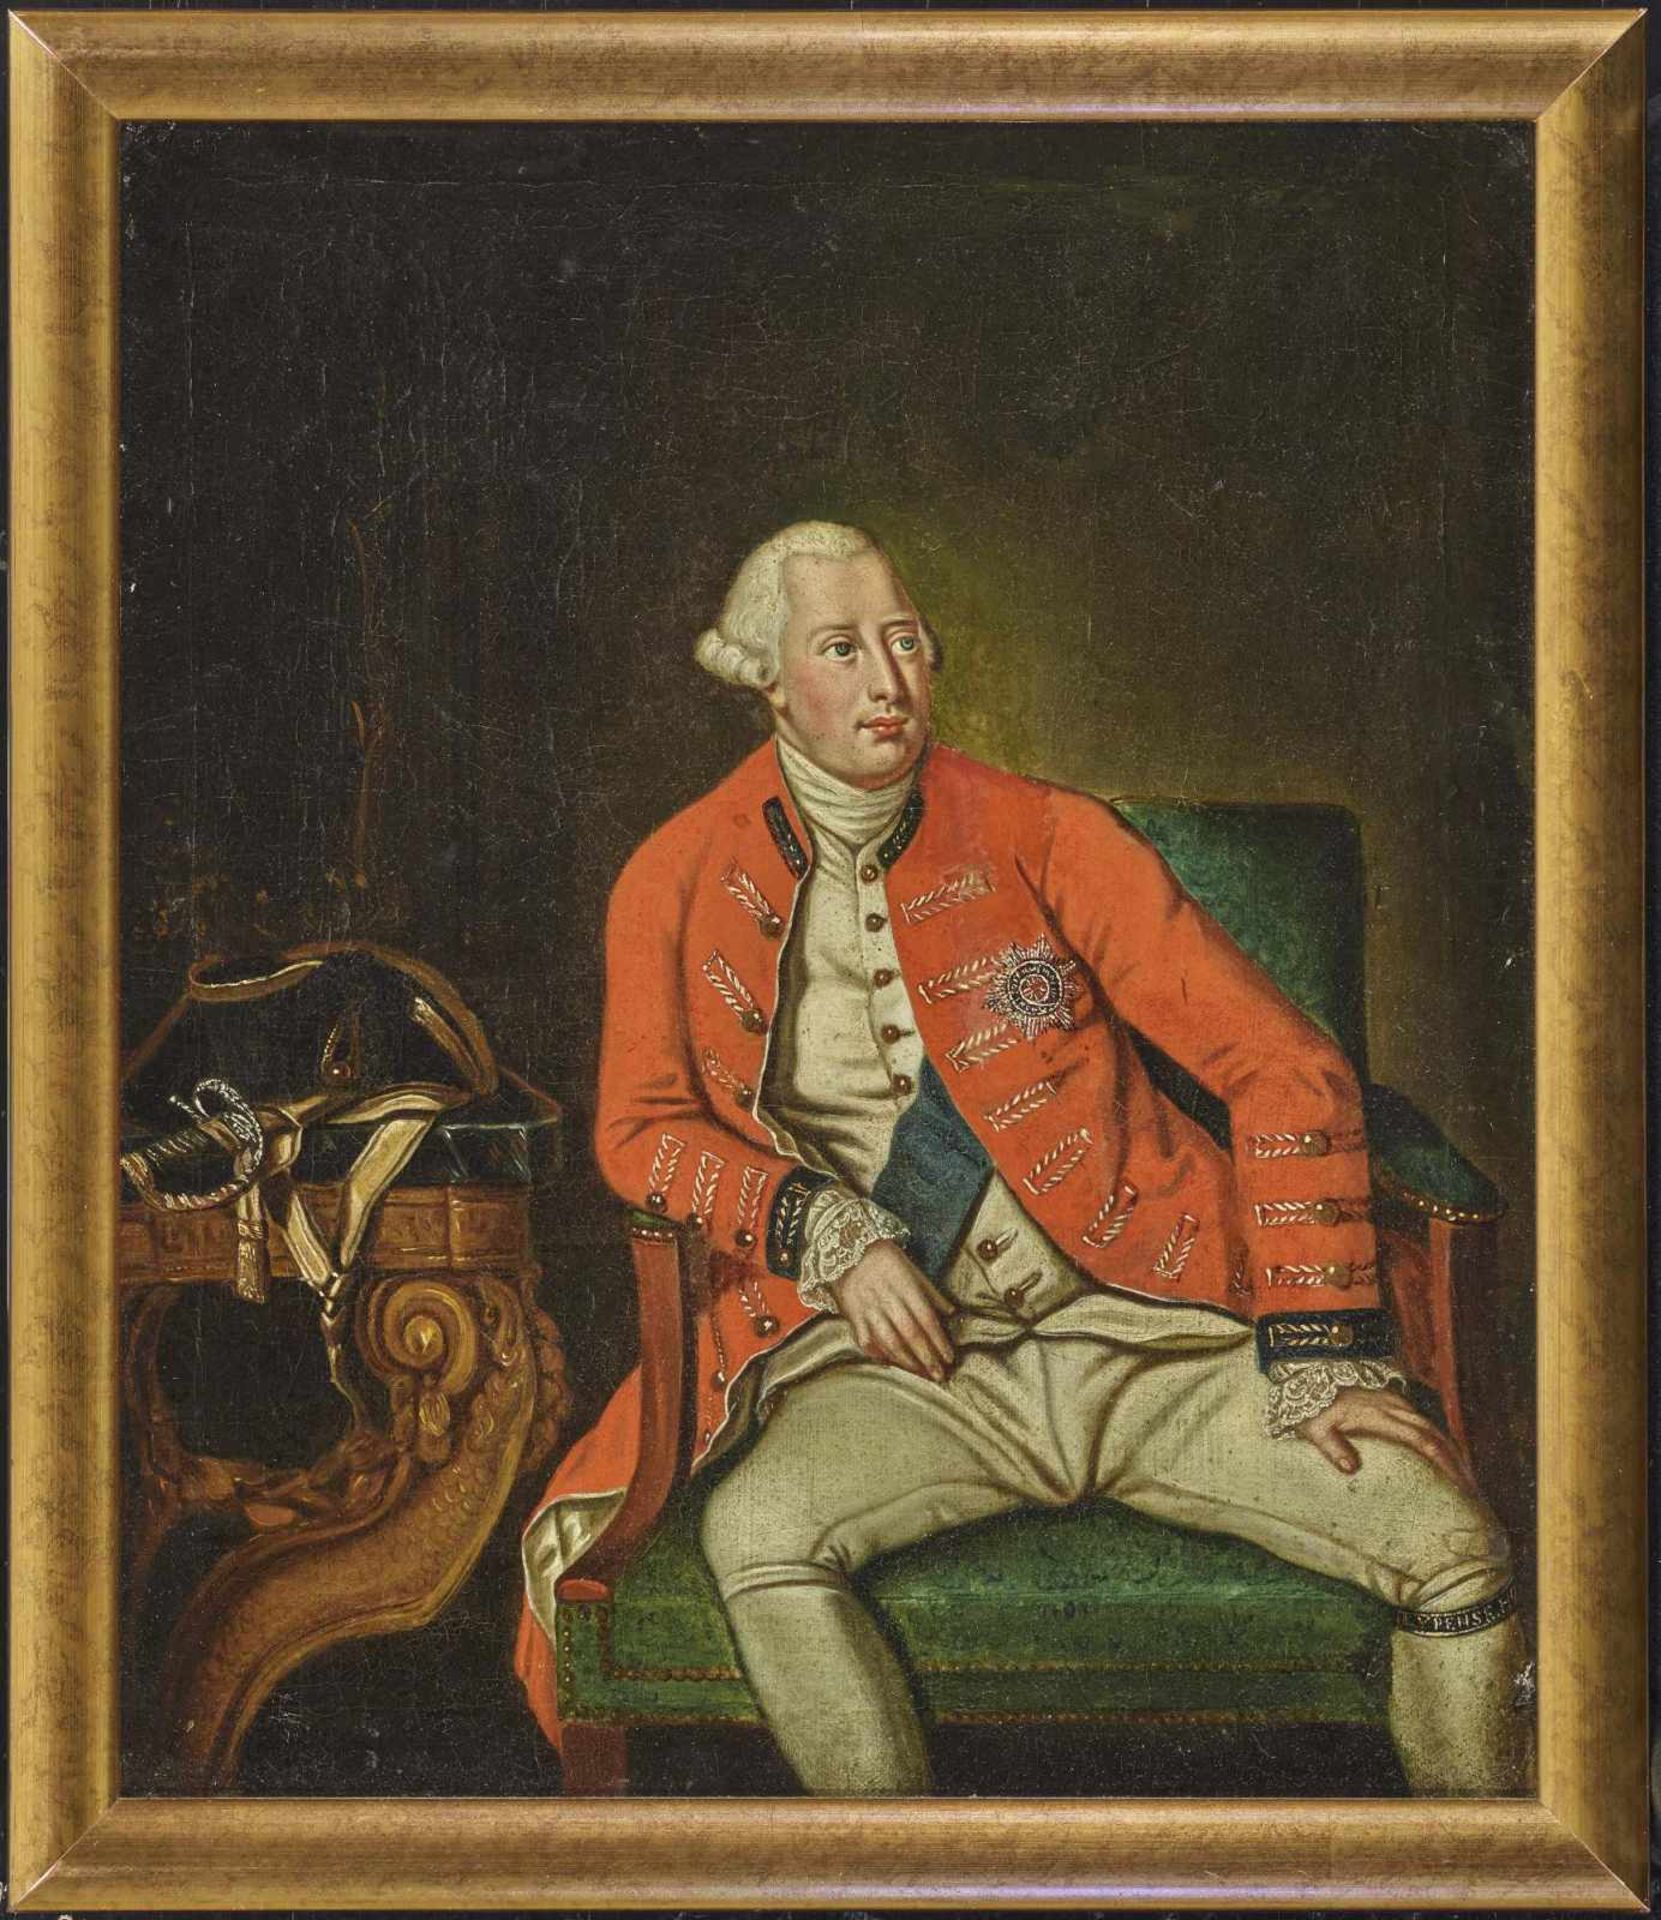 ENGLAND Ende 18. Jh. Porträt George III ÖL auf Lwd. 48 x 40 cm. Doubliert. Rest. Rahmen. - Bild 2 aus 2